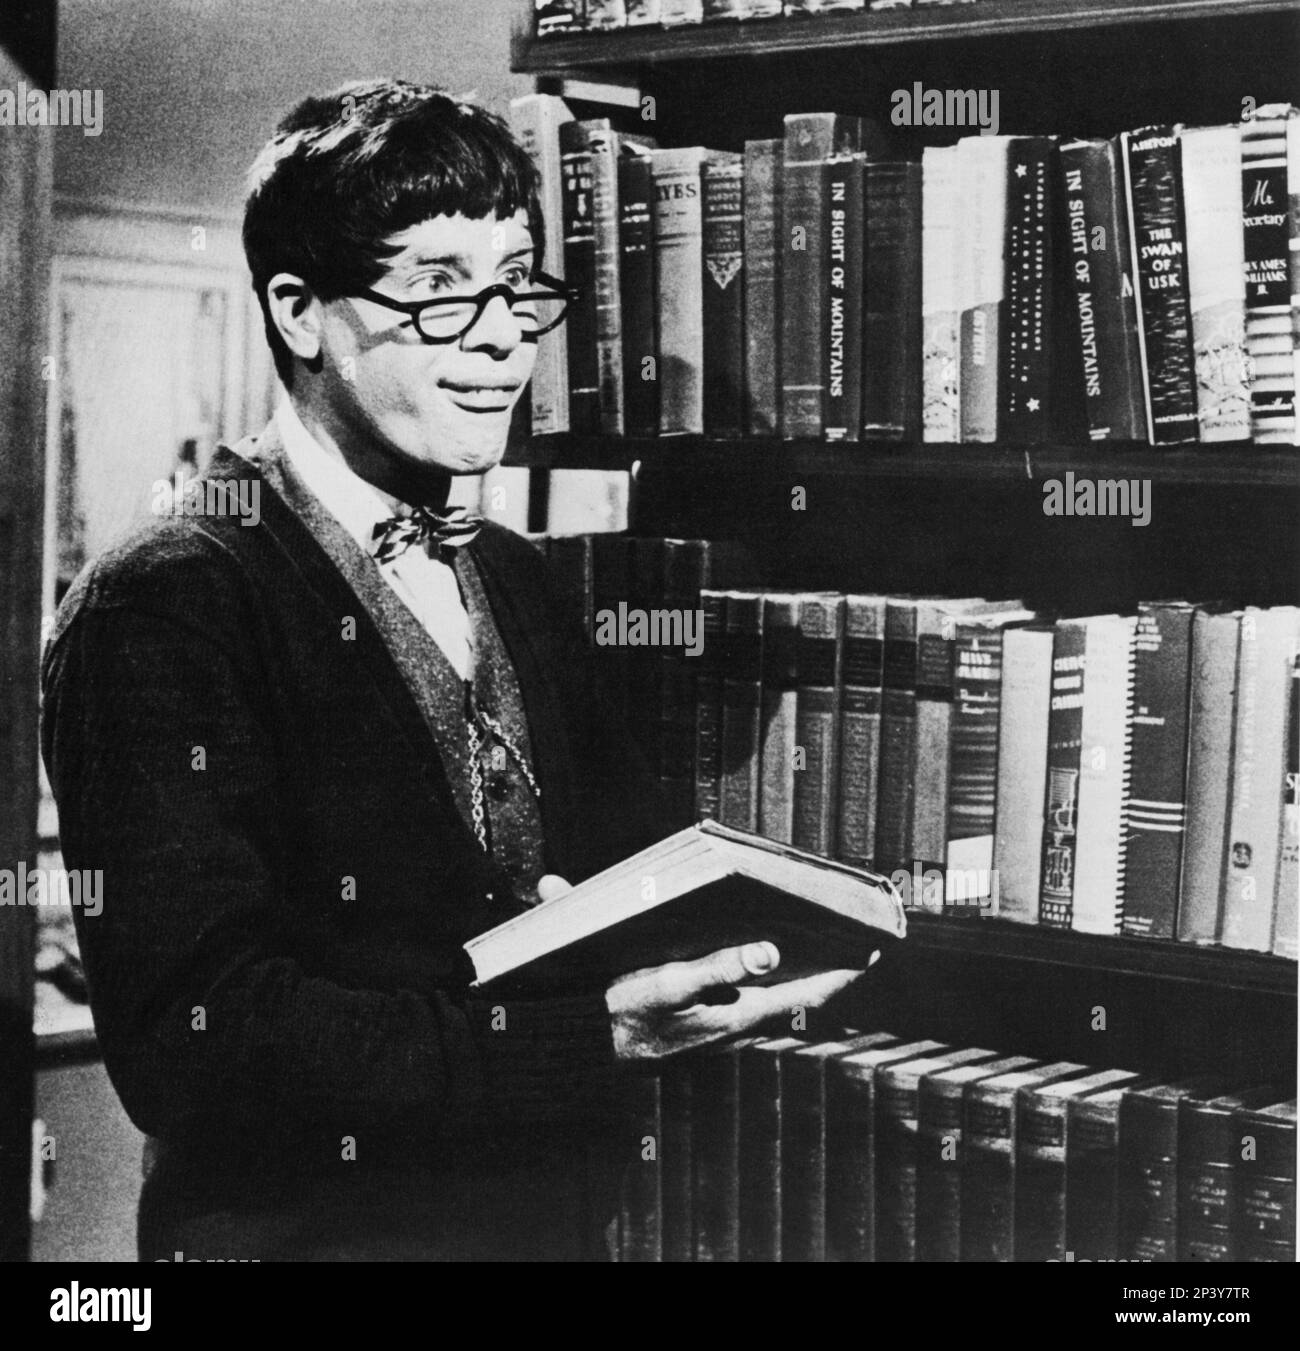 1963 : The movie actor JERRY LEWIS in THE NUTTY PROFESSOR ( Le folli notti del Professor Jerryll ) by Jerry Lewis  - FILM - MOVIE - CINEMA - fool - pazzo - matto - COMICO - tie bow - paillon - cravatta - occhiali da vista - lens - glasses - libro - book - libreria - library - bibblioteca  ----  Archivio GBB Stock Photo